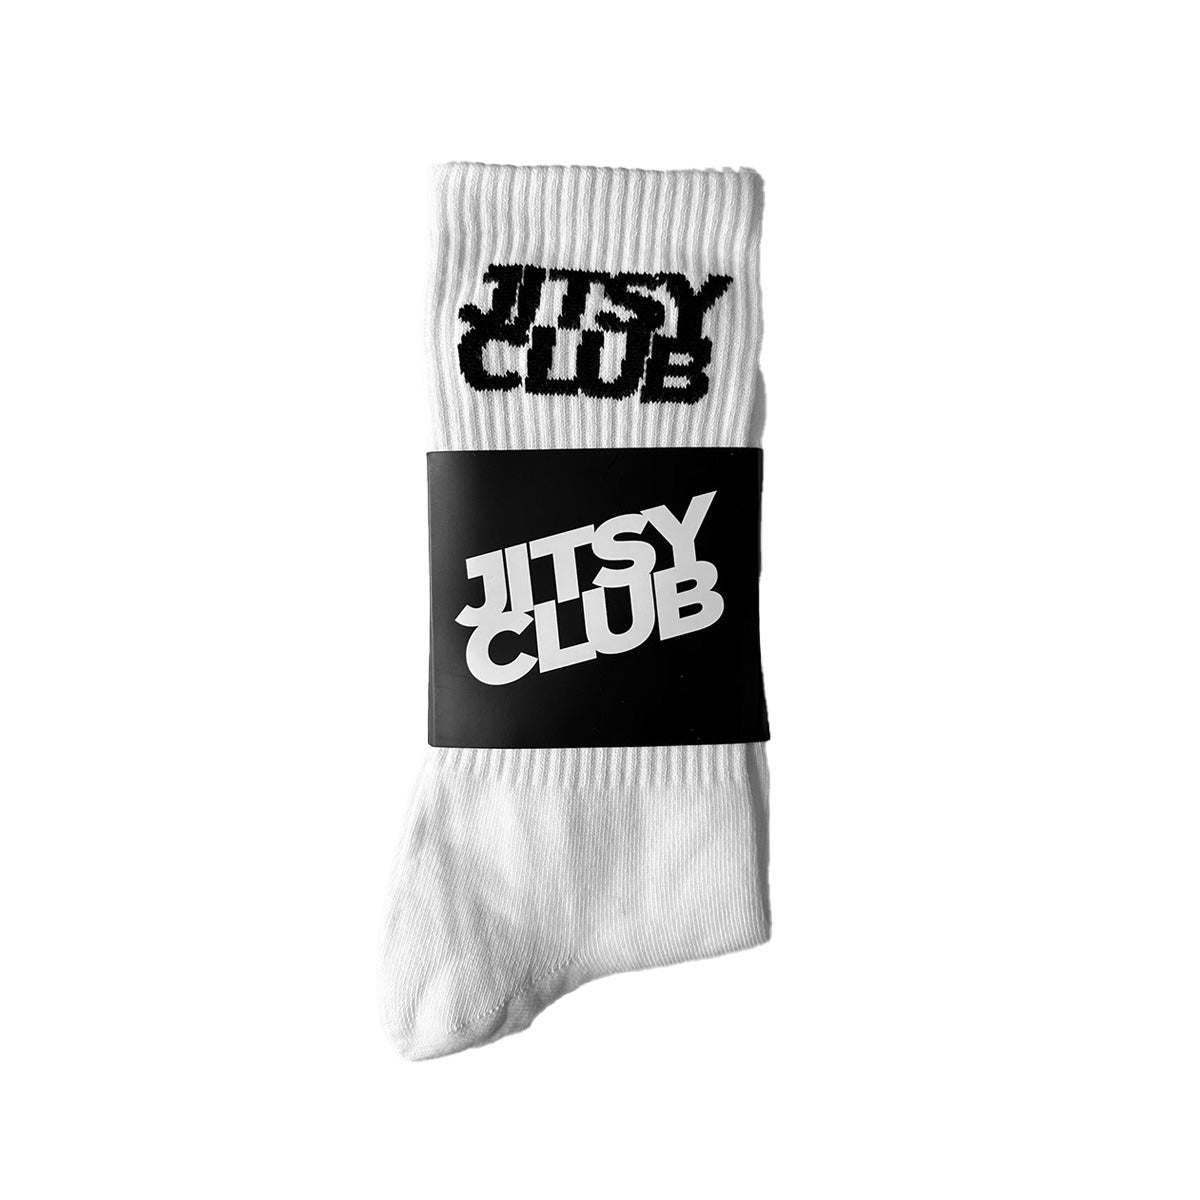 Jitsy Crew Socks